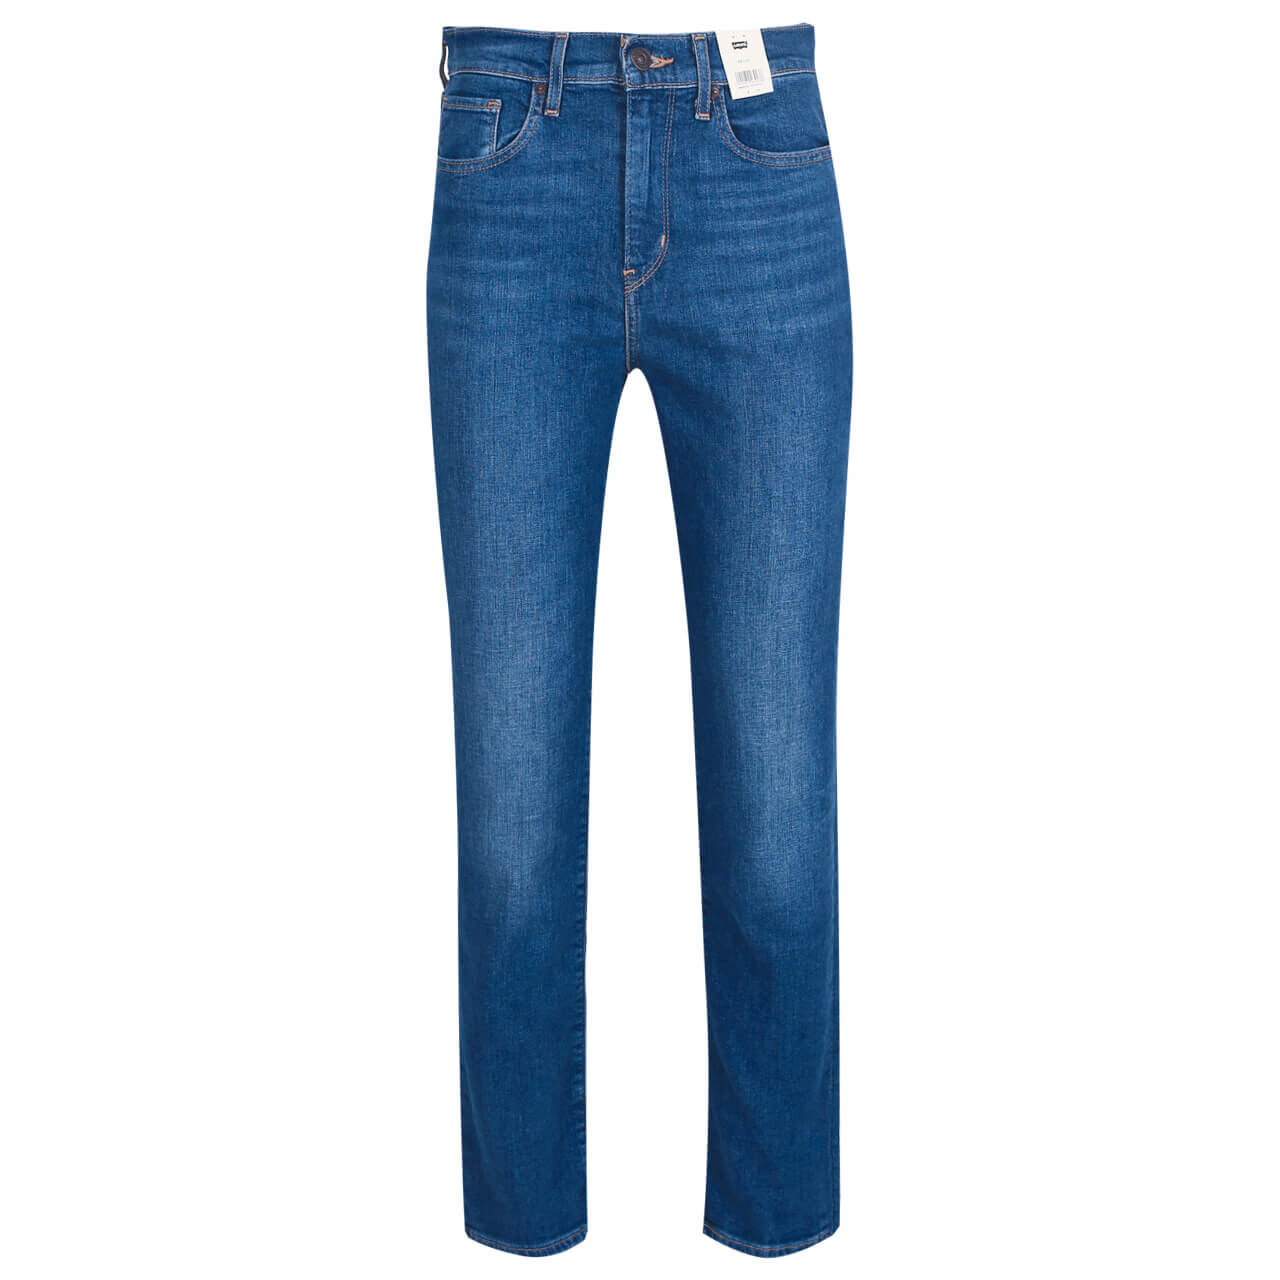 Levis Jeans 724 Straight für Damen in Mittelblau angewaschen, FarbNr.: 0139